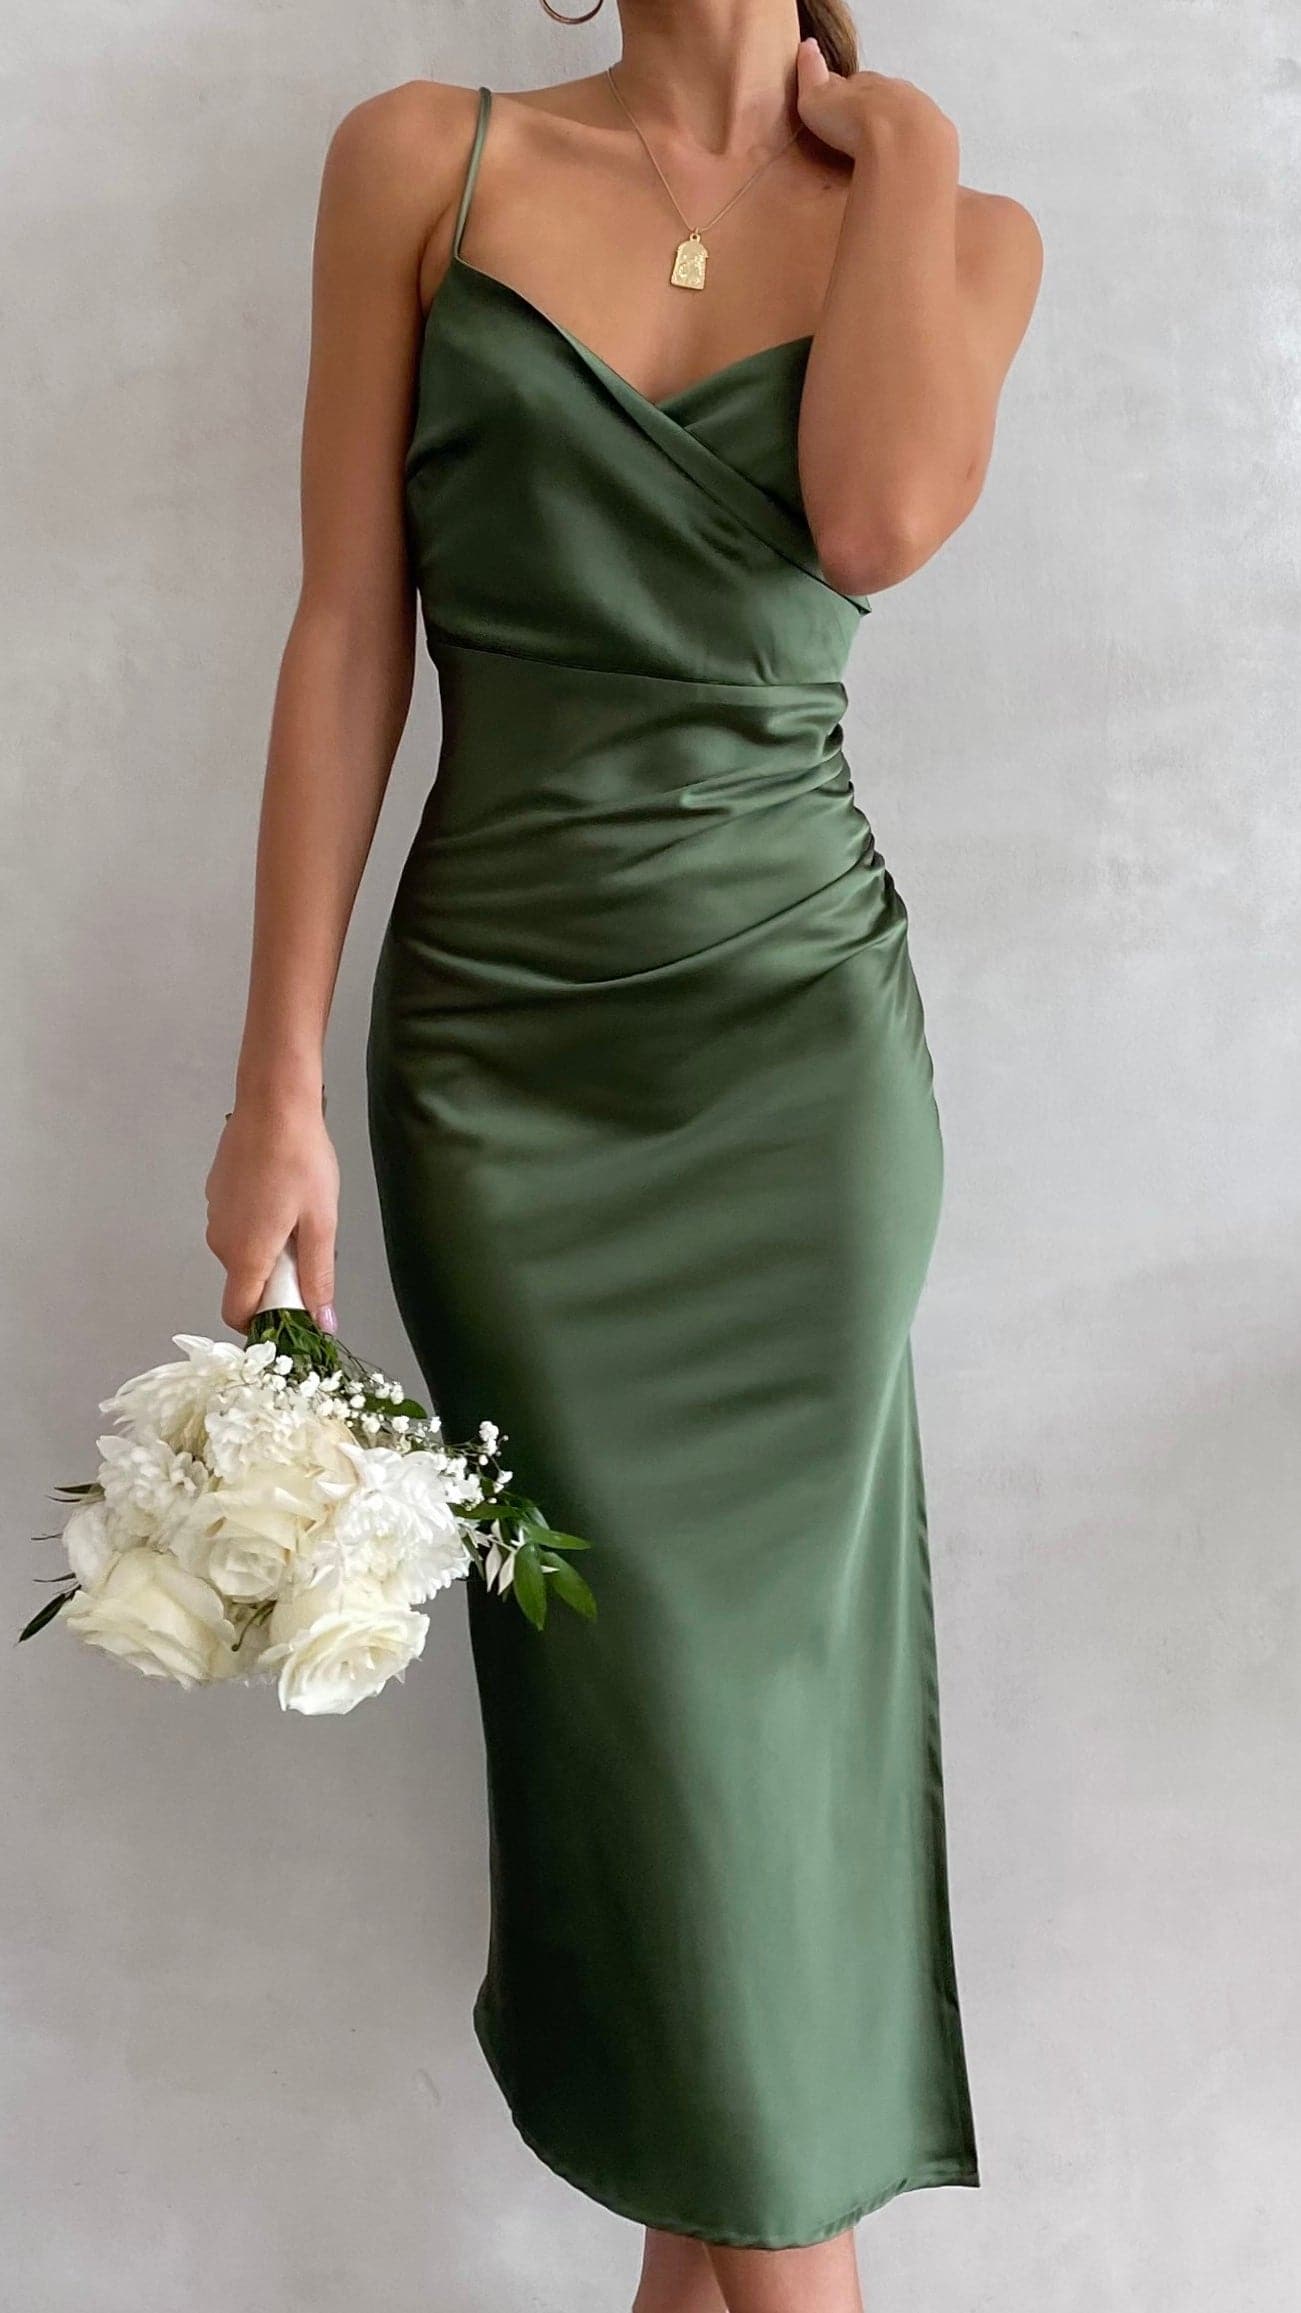 Olive Dress, Buy Olive Dresses Online Australia